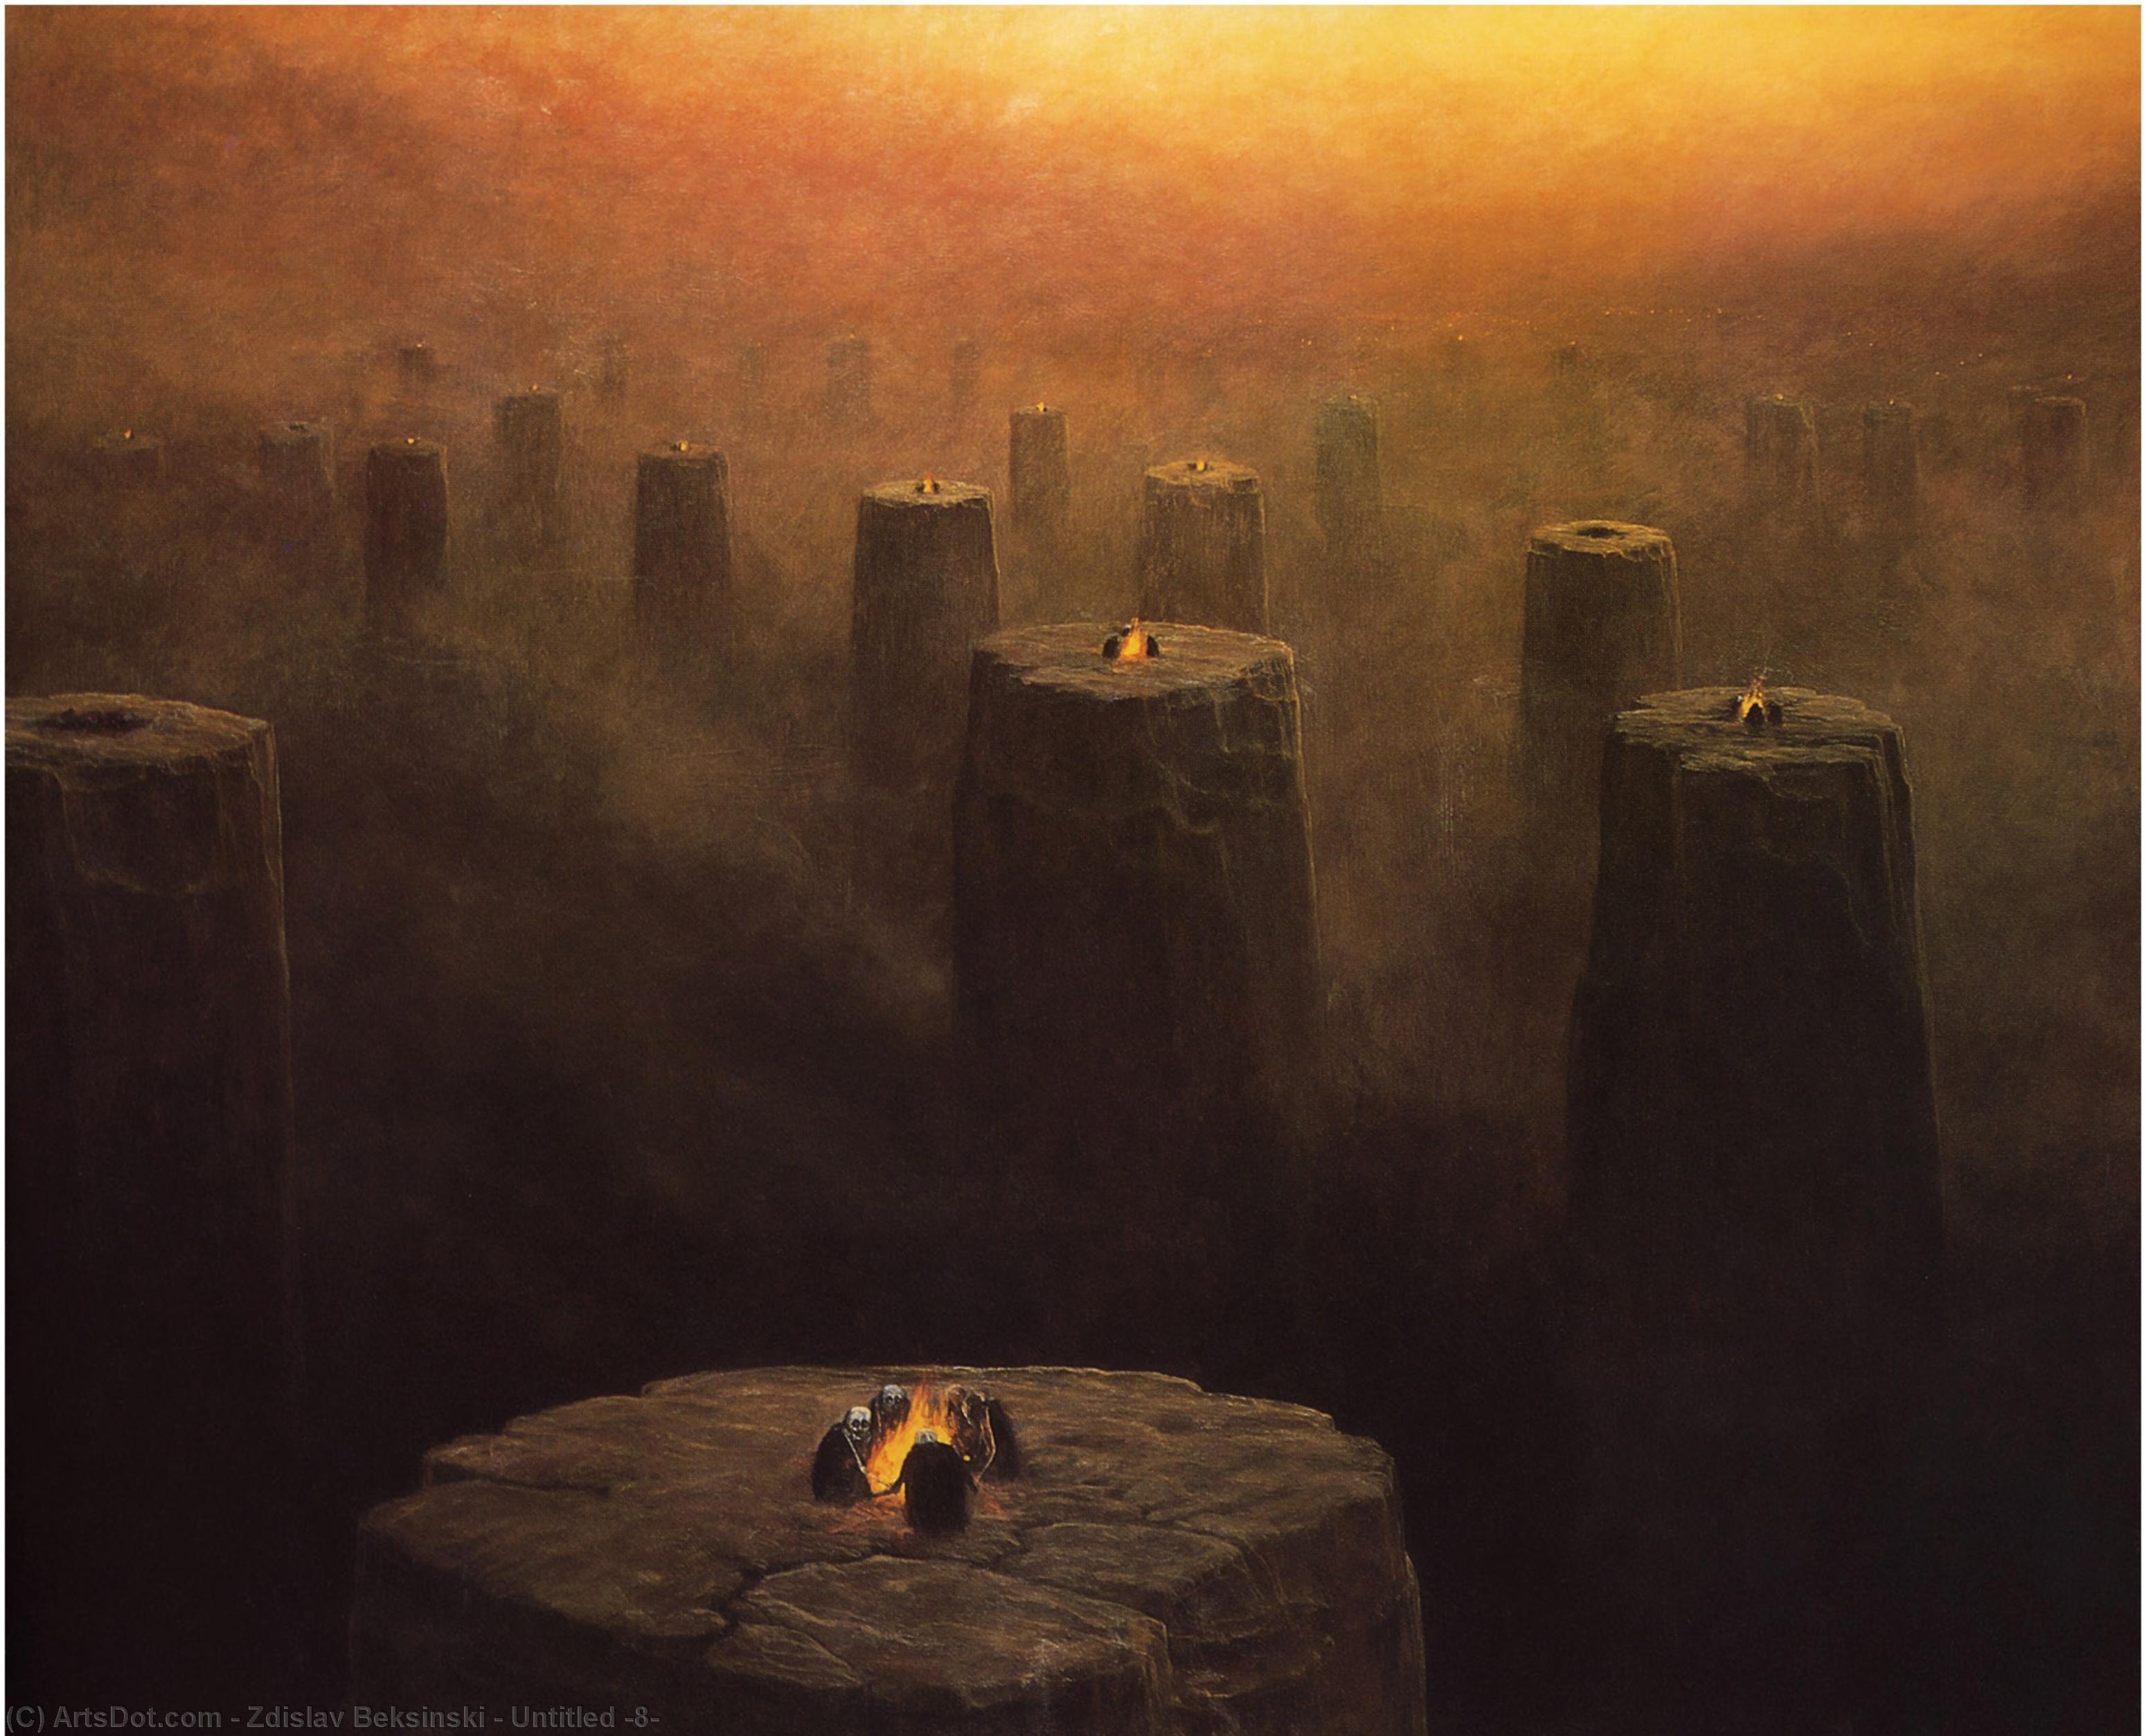 WikiOO.org - אנציקלופדיה לאמנויות יפות - ציור, יצירות אמנות Zdislav Beksinski - Untitled (8)